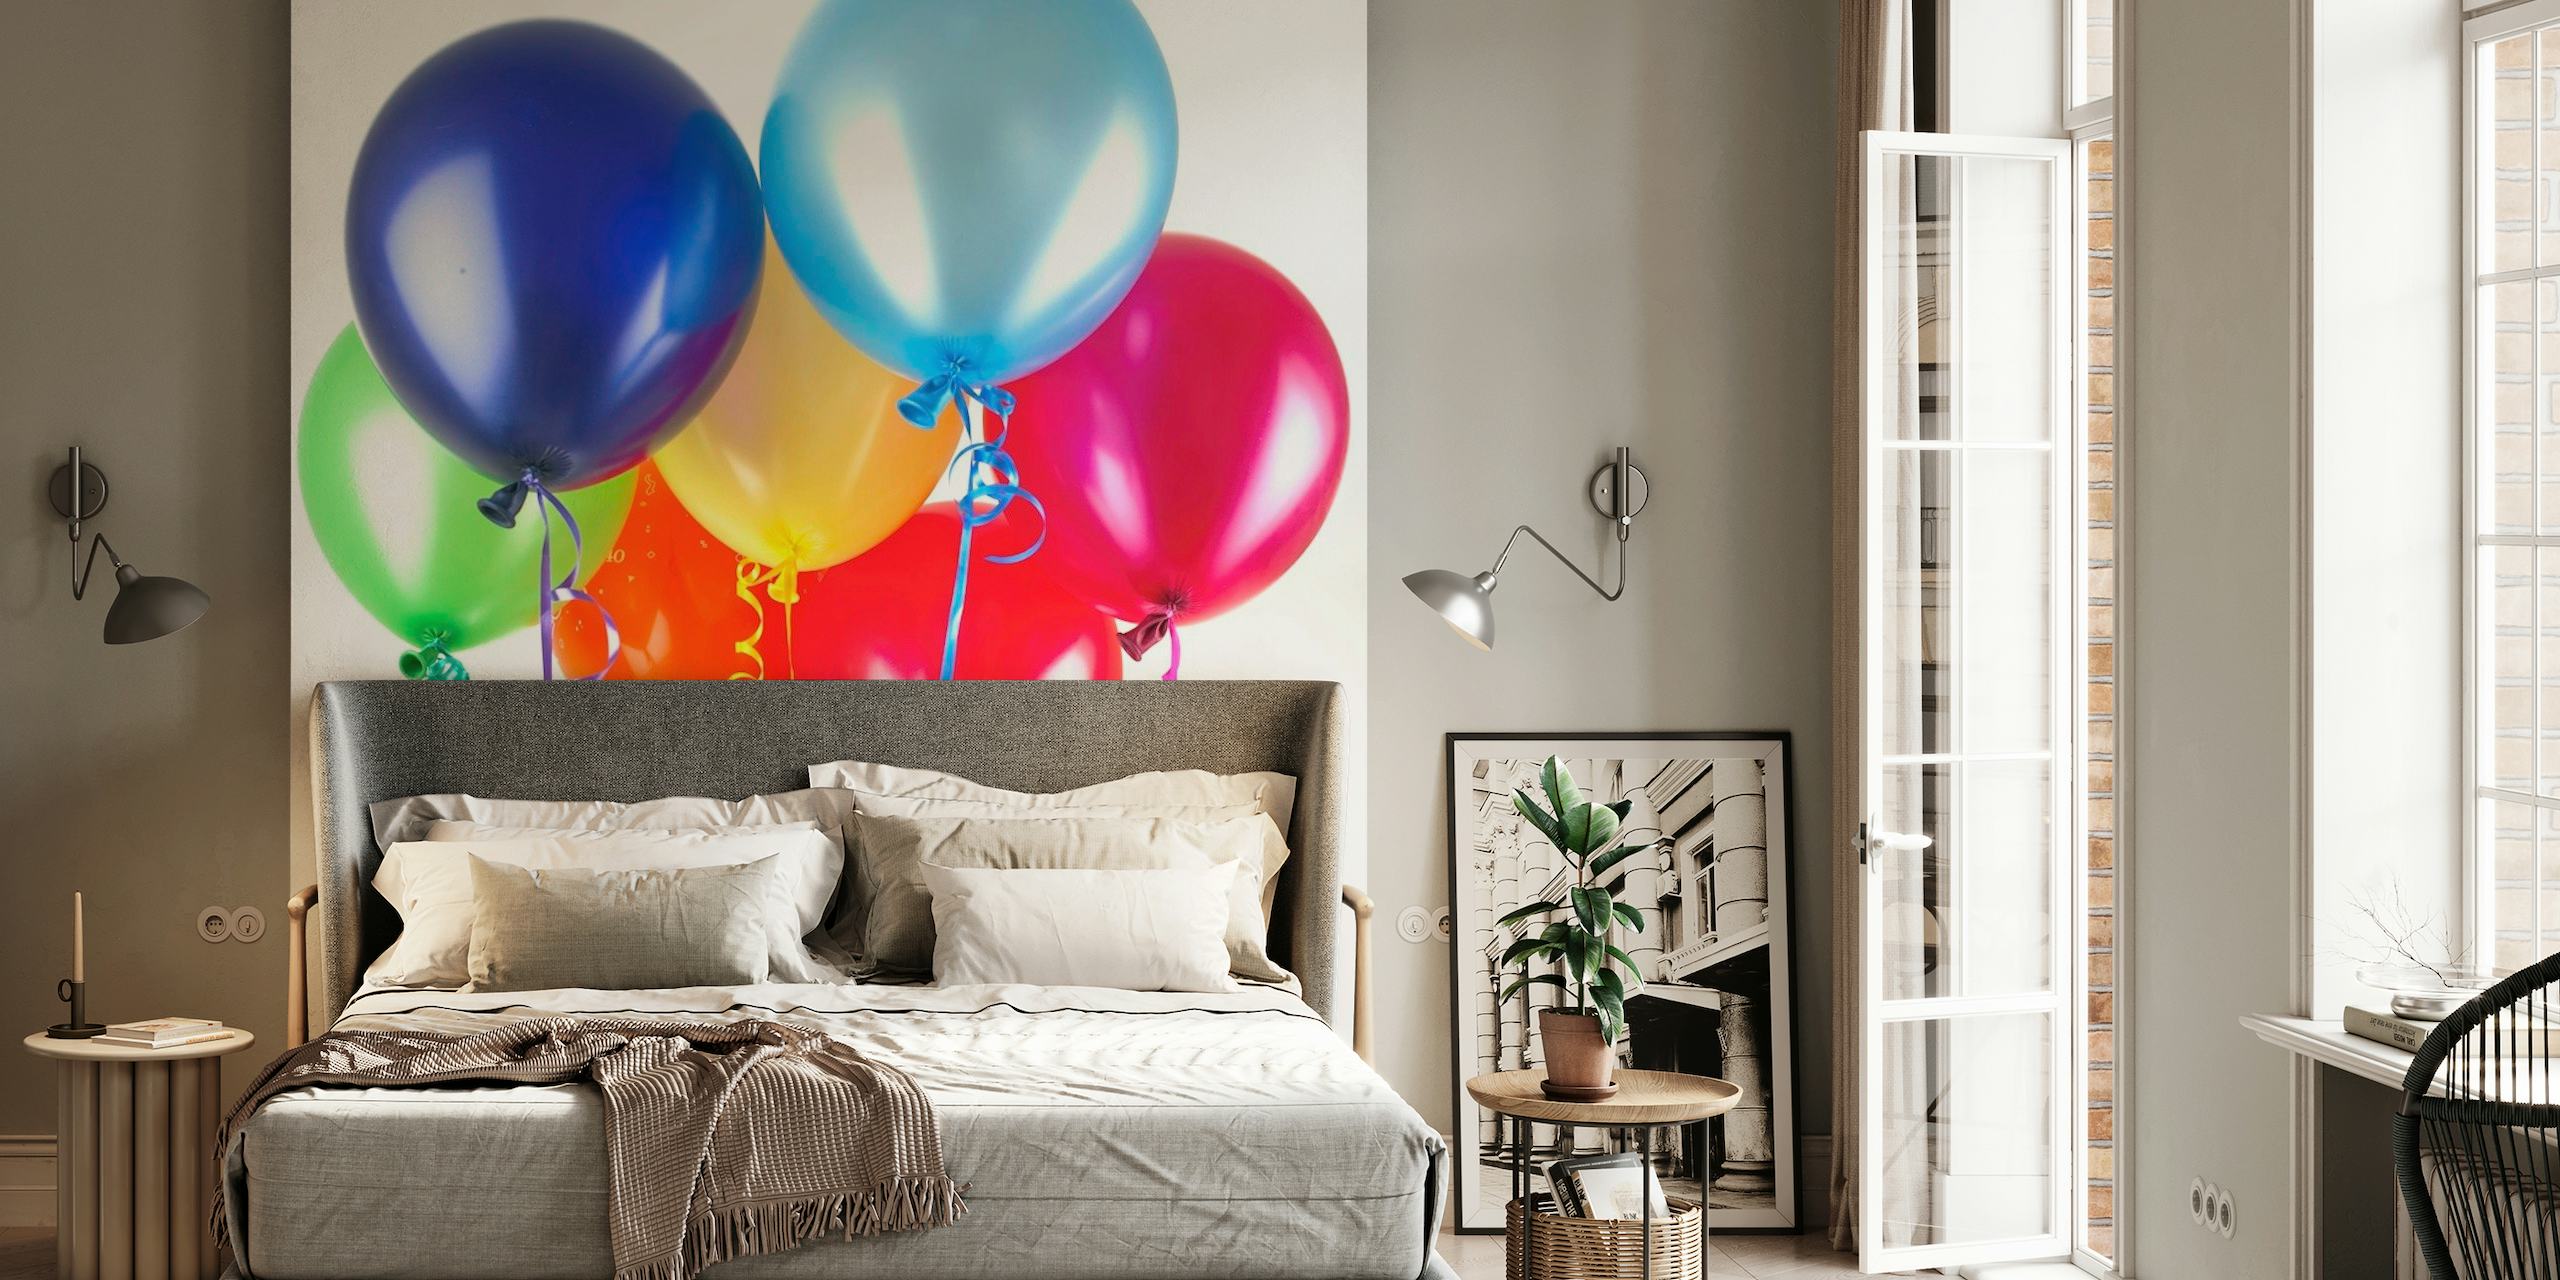 Una vivace gamma di palloncini colorati in un murale